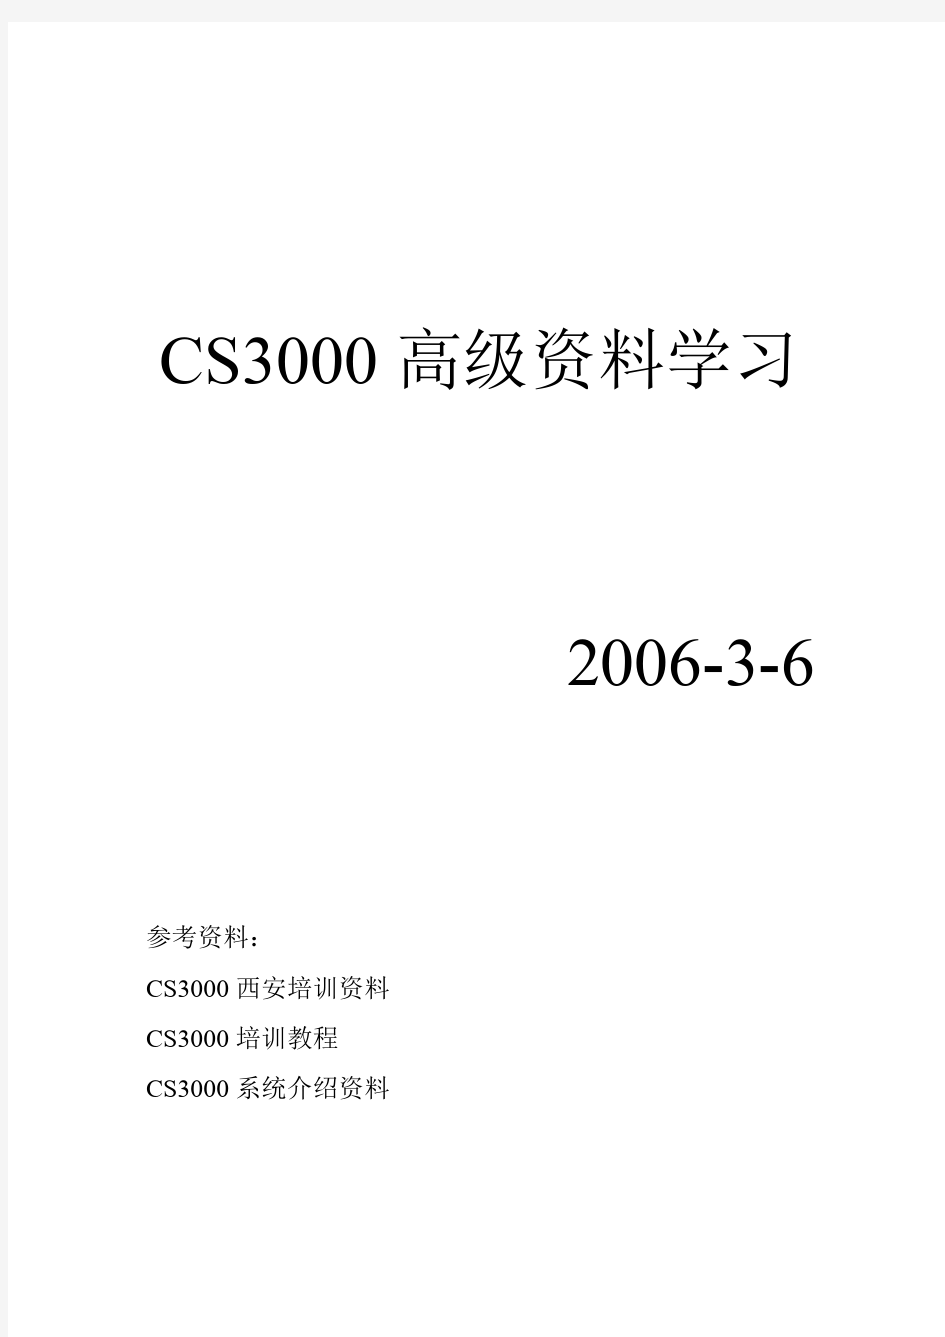 日本横河CS3000-DCS高级资料